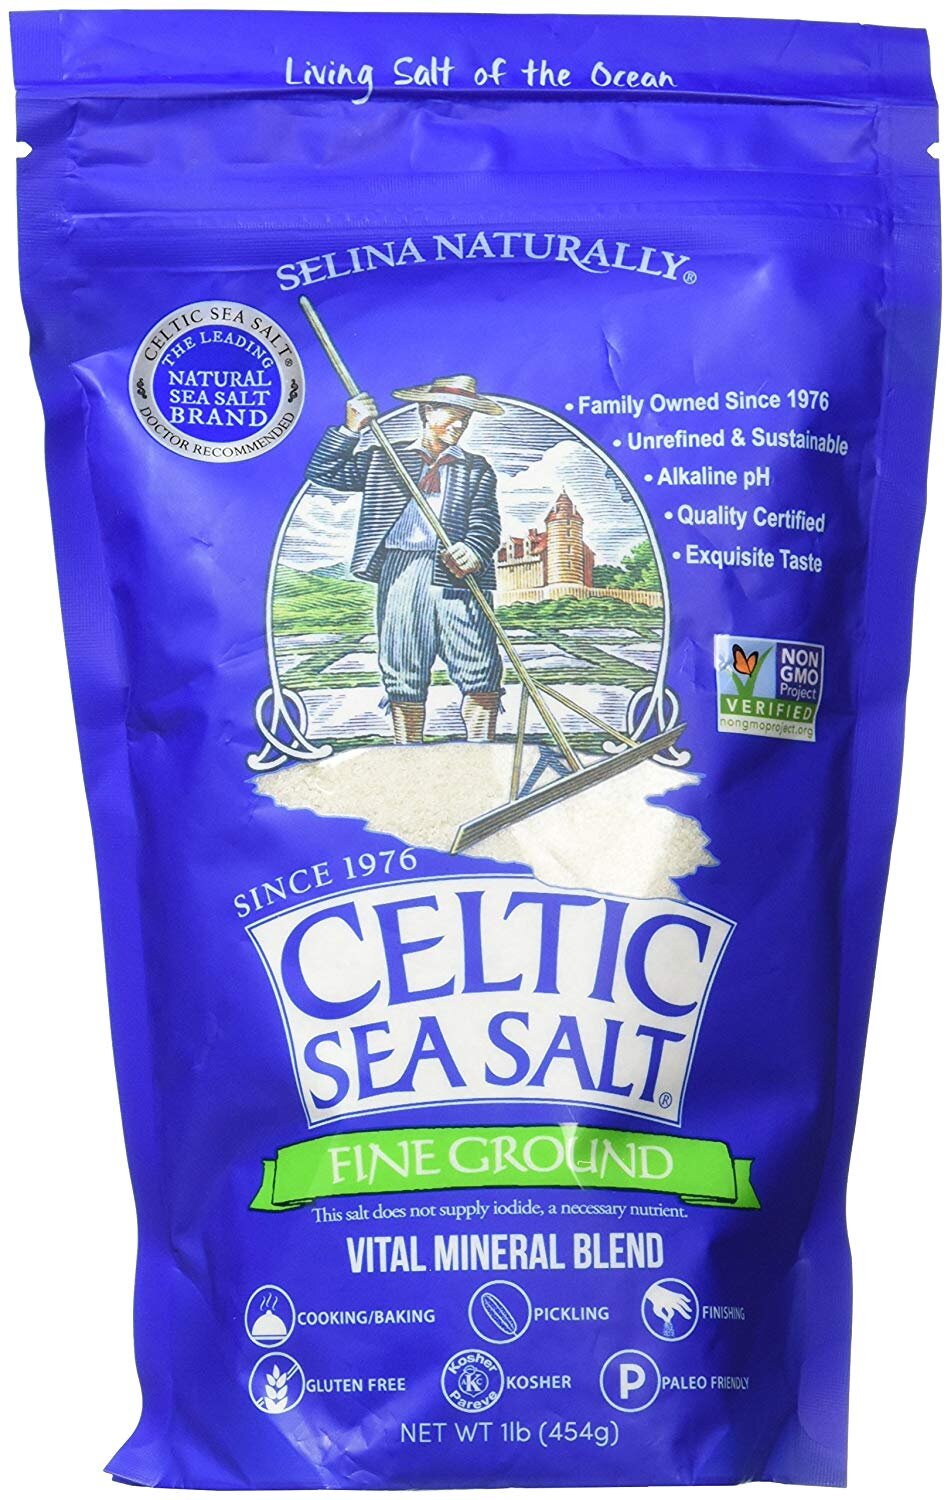 Celtic Sea Salt $9